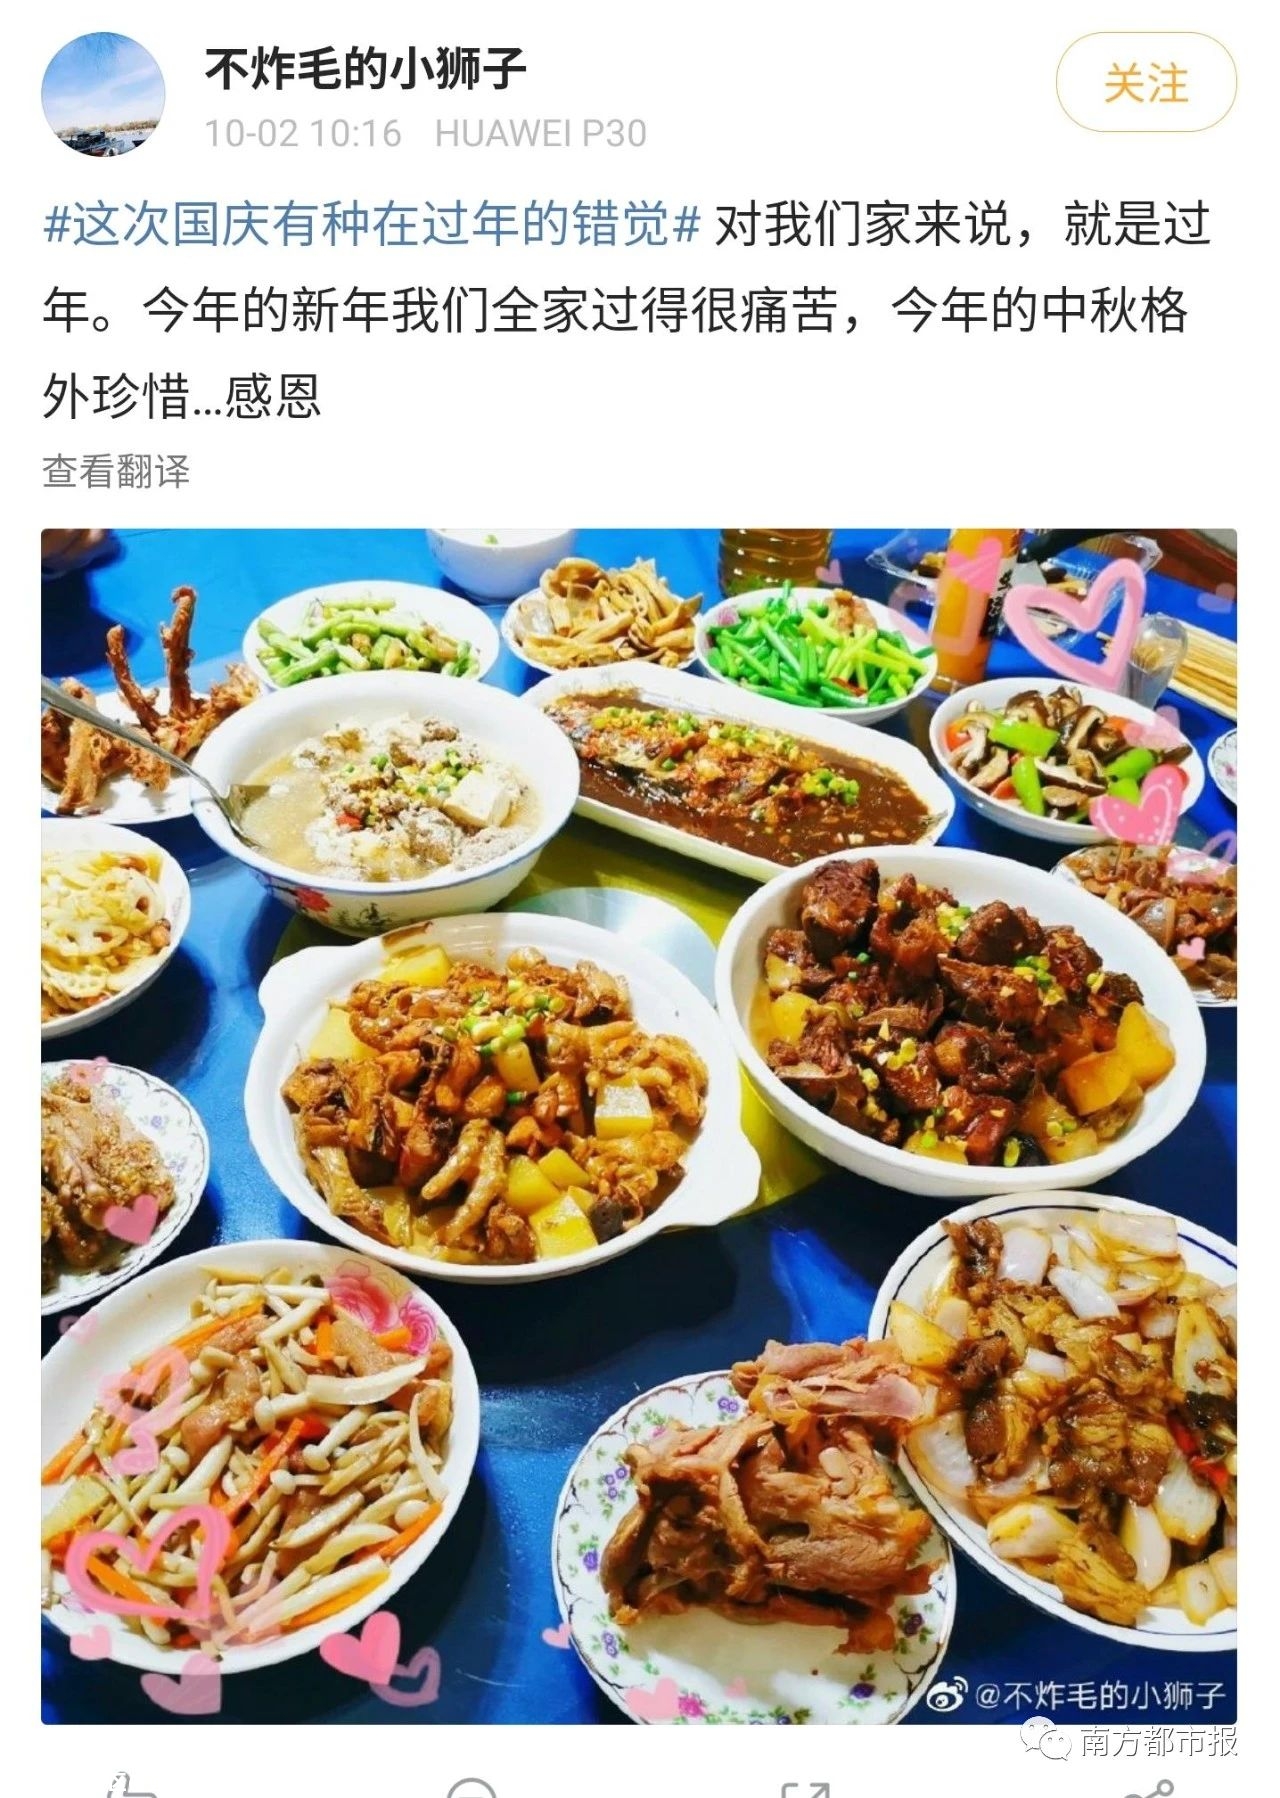 “吃饭排号4000桌”，网友说这个国庆像过年678 / 作者:登山涉水 / 帖子ID:277785